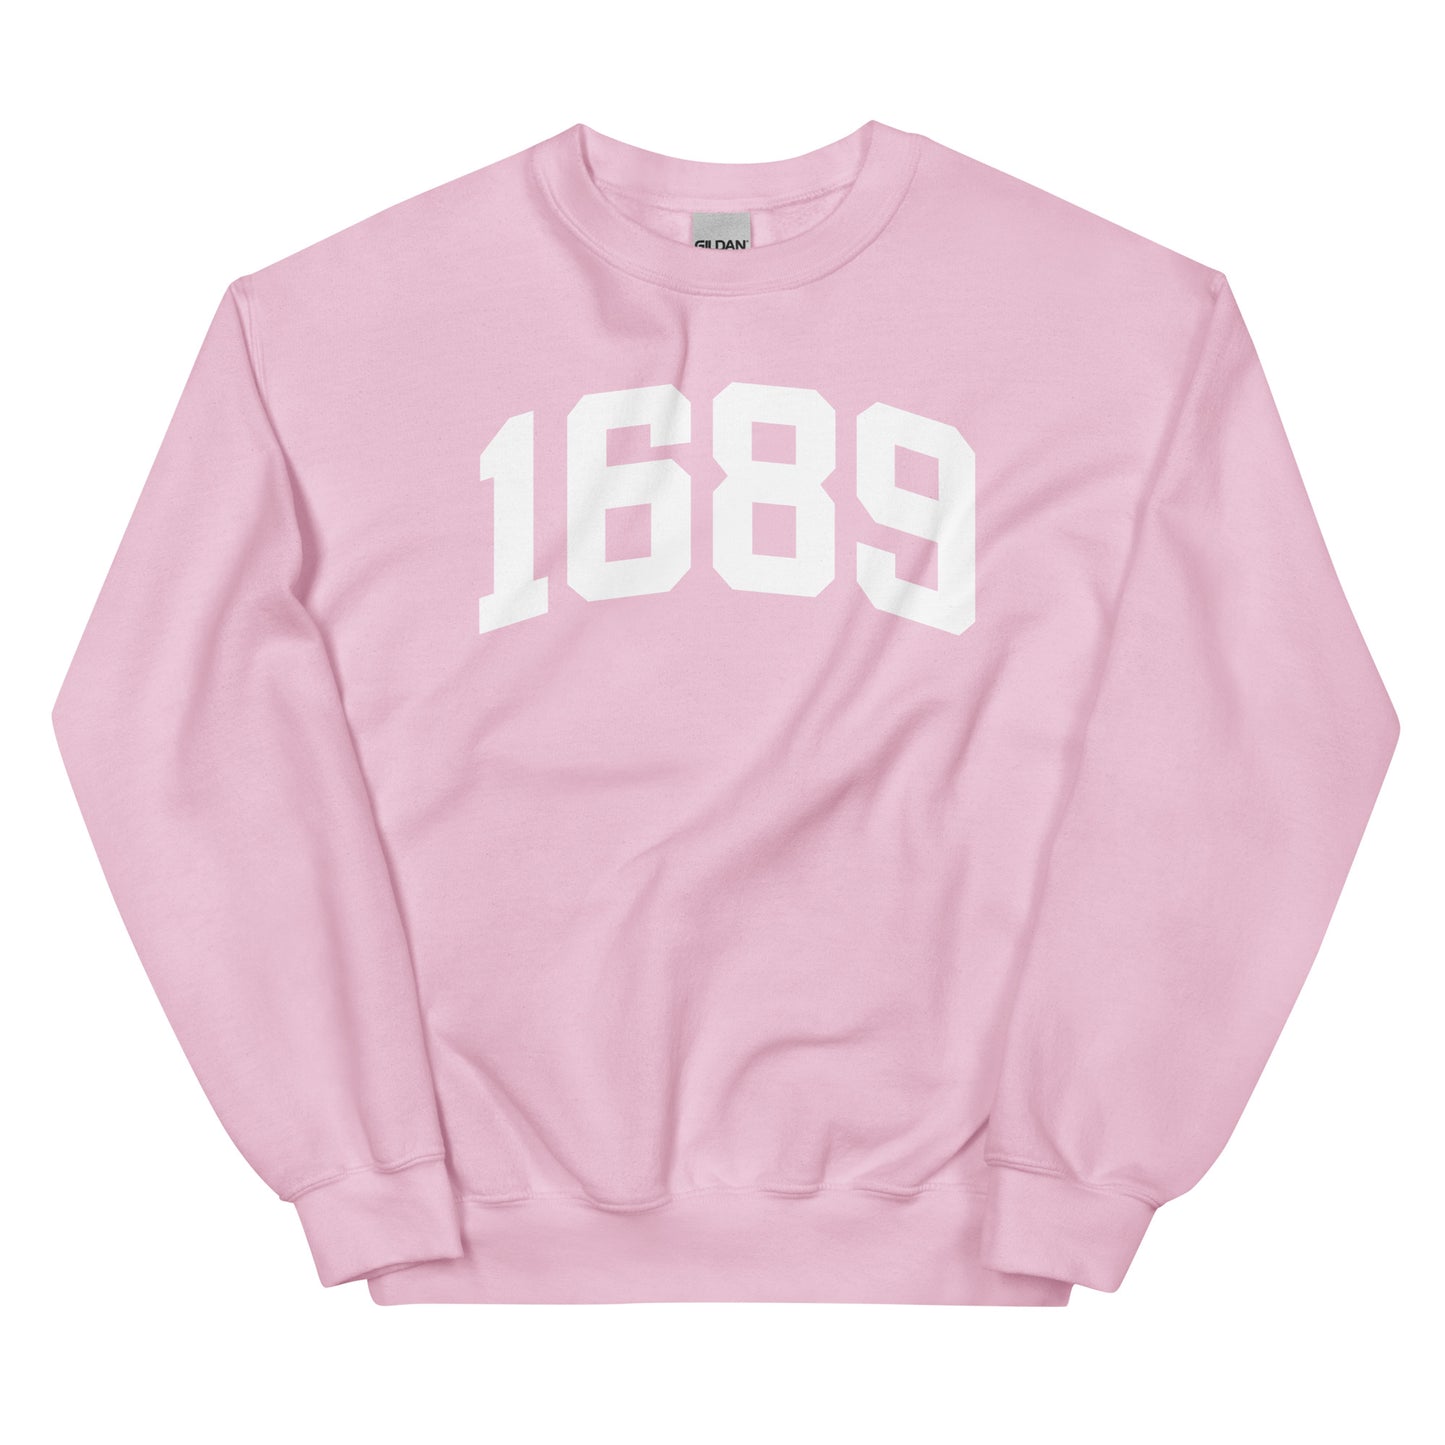 1689 Sweatshirt